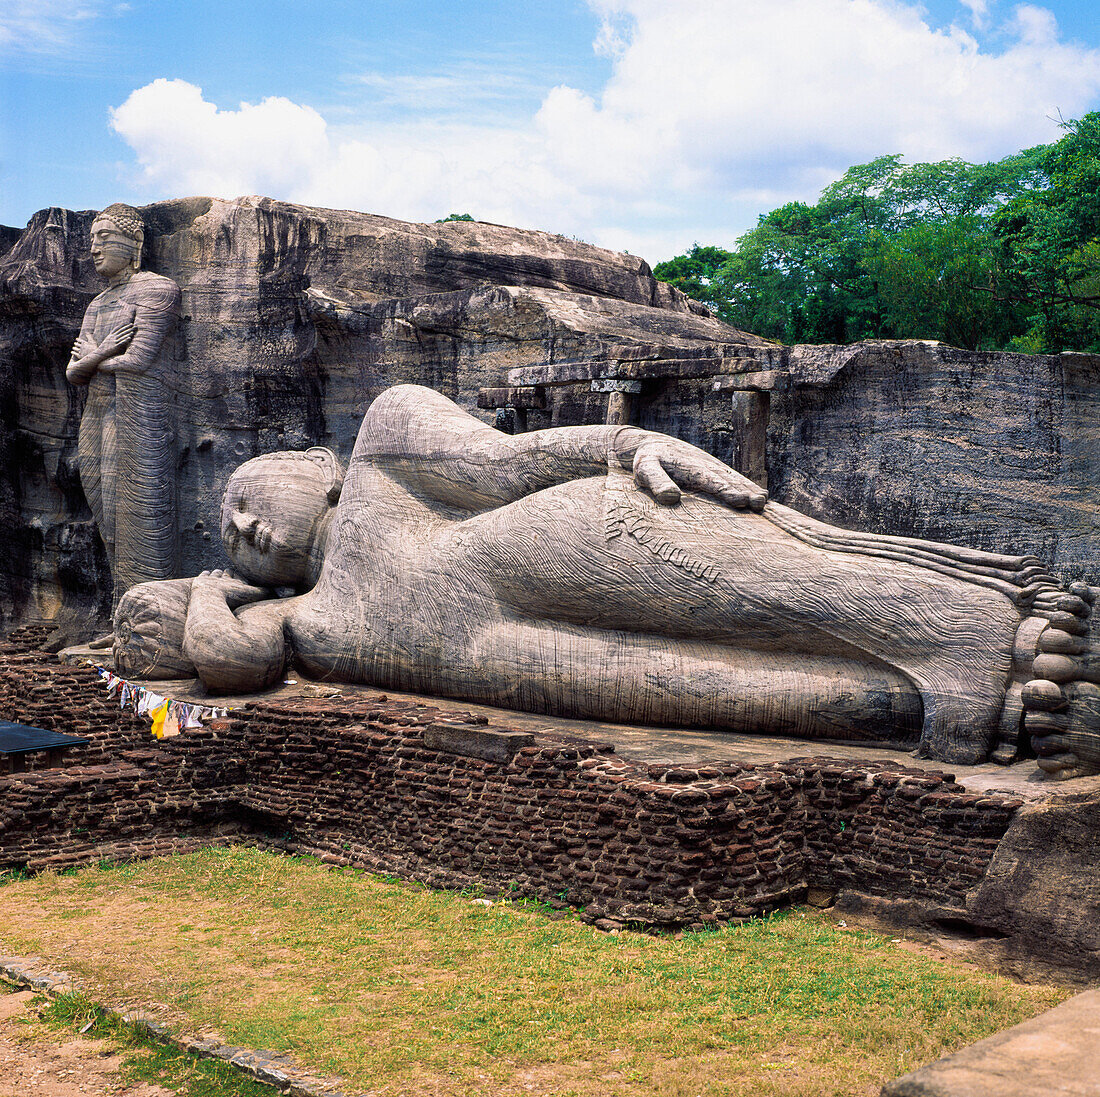 Giant reclining Buddha, Polonnaruwa, Sri Lanka.